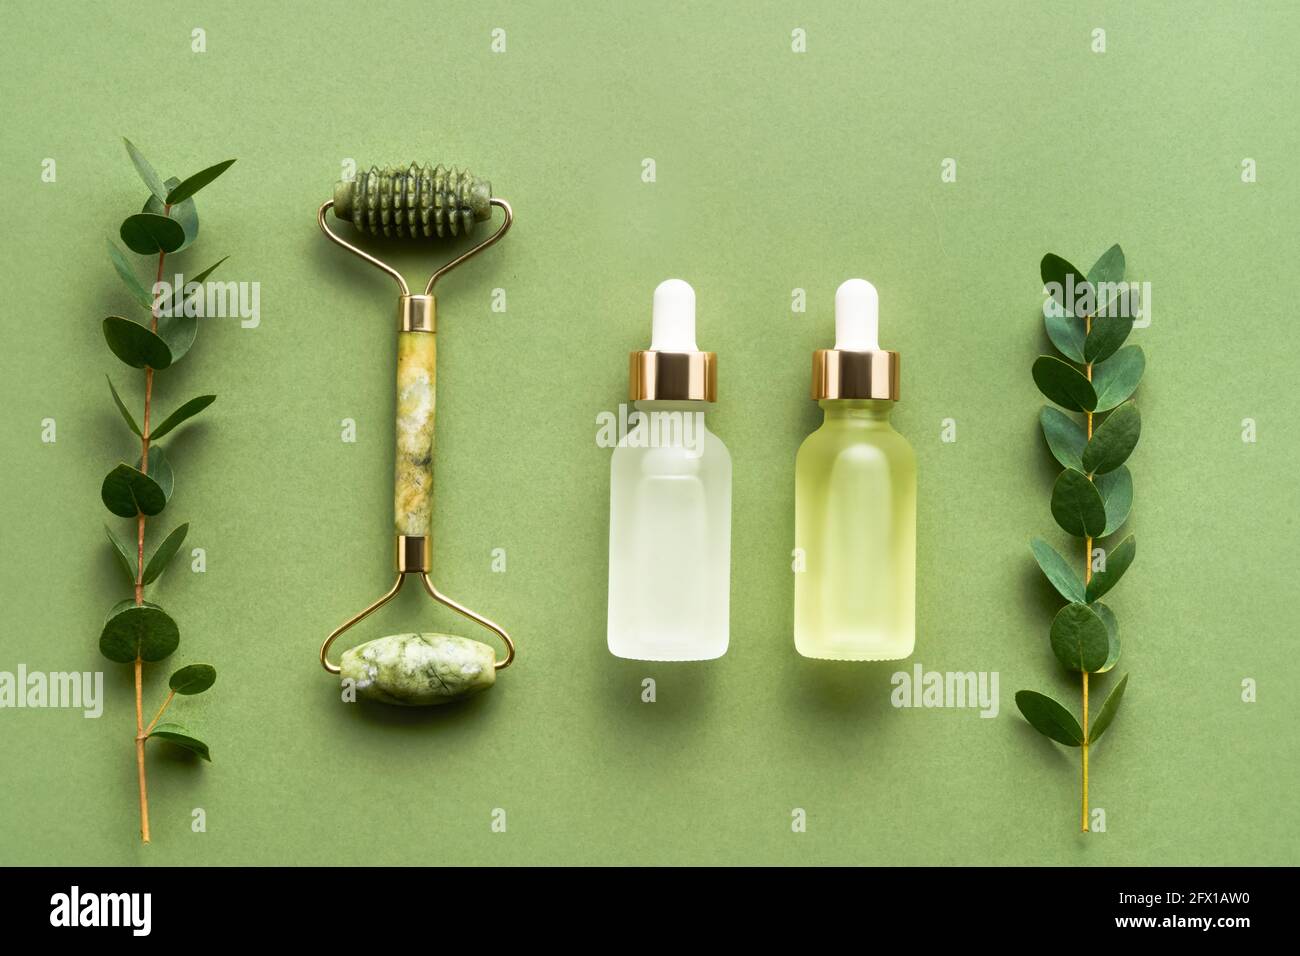 Grüne Massage-Walze mit Jade, Tropfflaschen aus Glas für medizinische und kosmetische Zwecke und Eukalyptus auf grünem Hintergrund. SPA-Konzept. Stockfoto